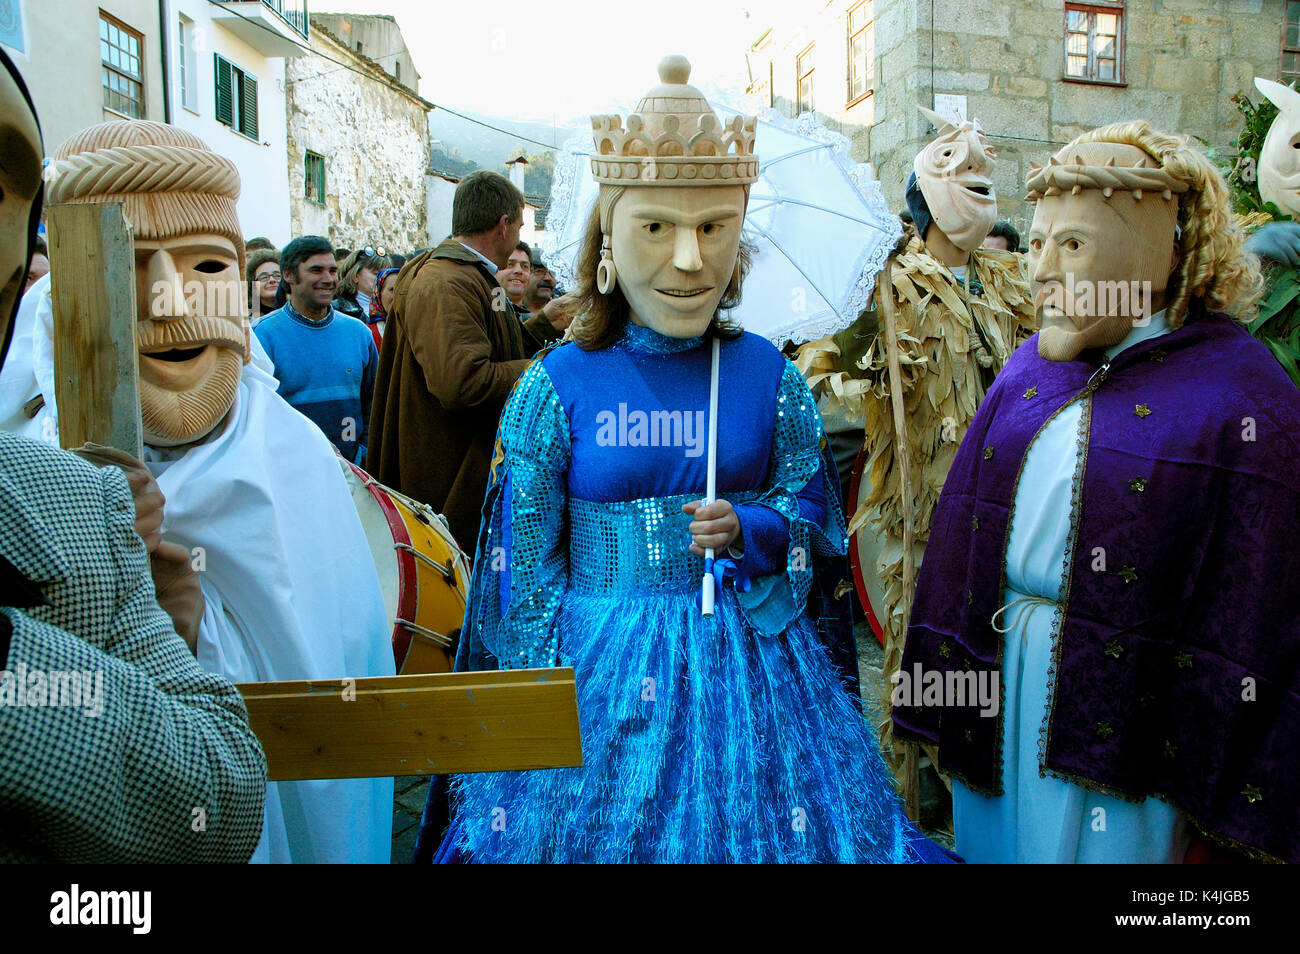 Tradizionali maschere in legno durante il carnevale. Lazarim, Beira Alta, Portogallo Foto Stock